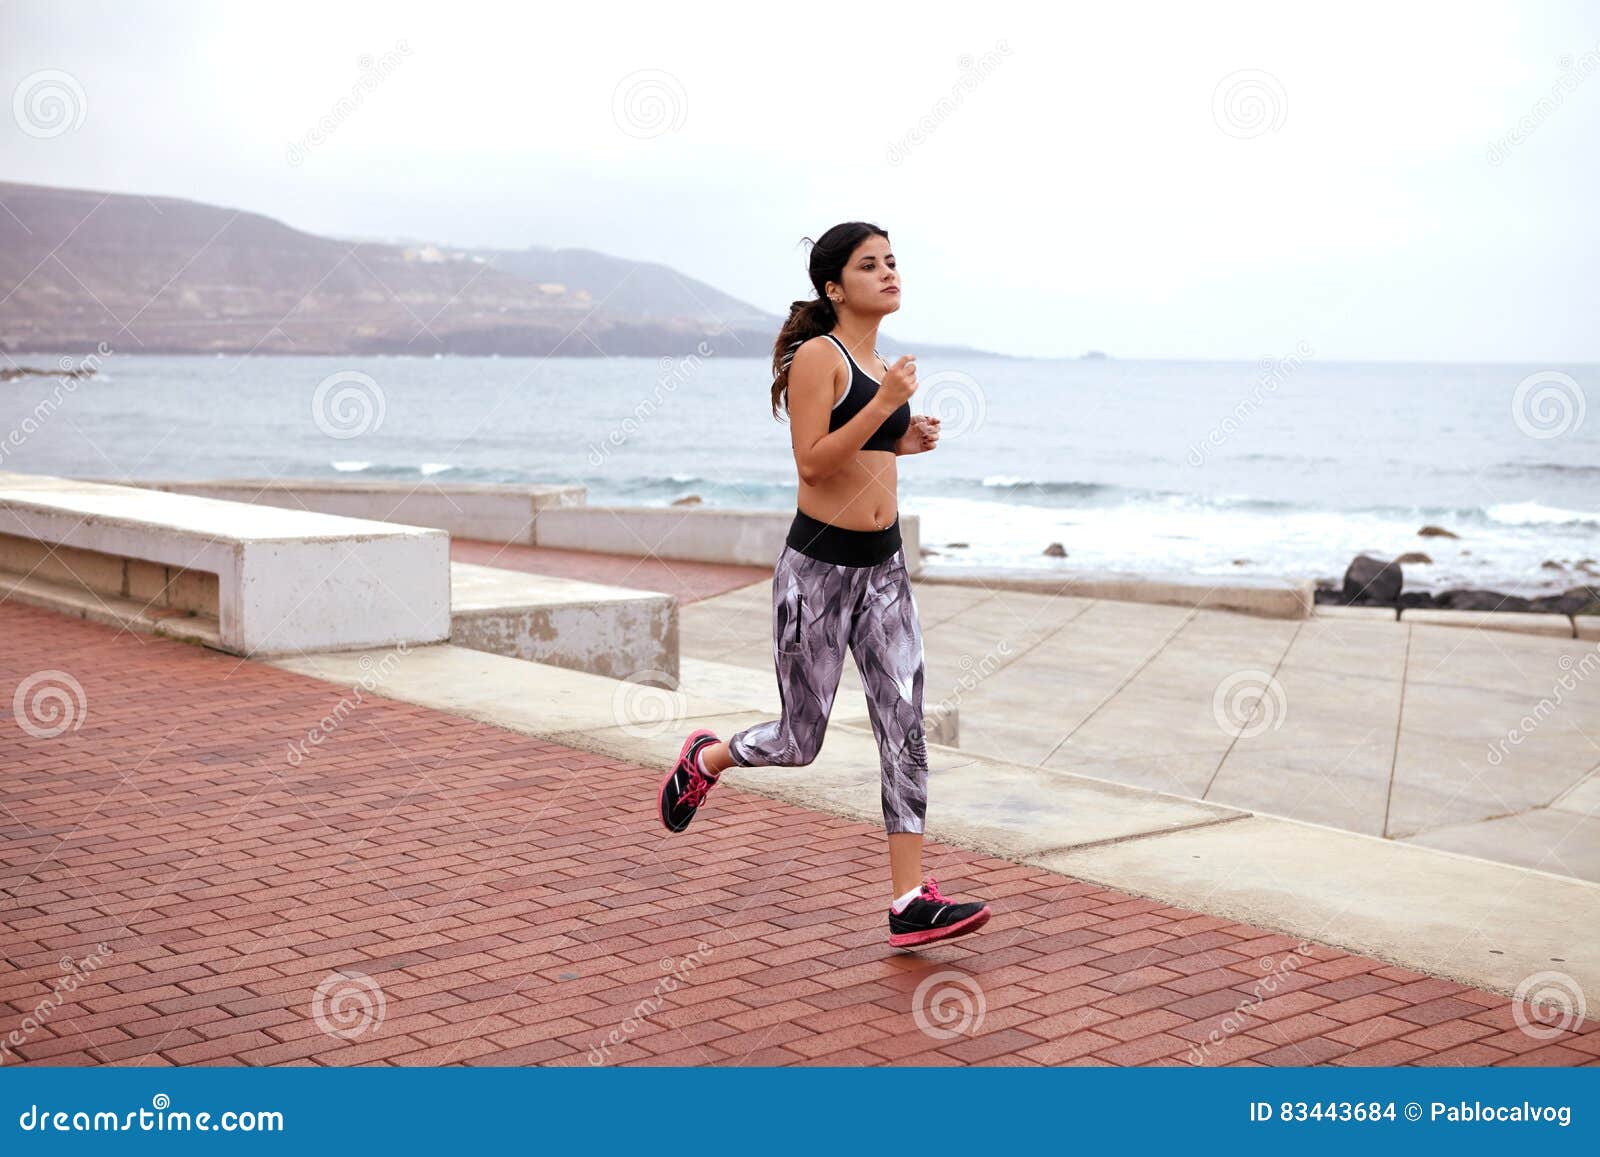 Jeune taqueur femelle sur l'esplanade. Jeune fille pulsant sur une esplanade pavée près d'un bord de la mer, des vêtements sport de port, des chaussures de course et de ses cheveux attachés de retour